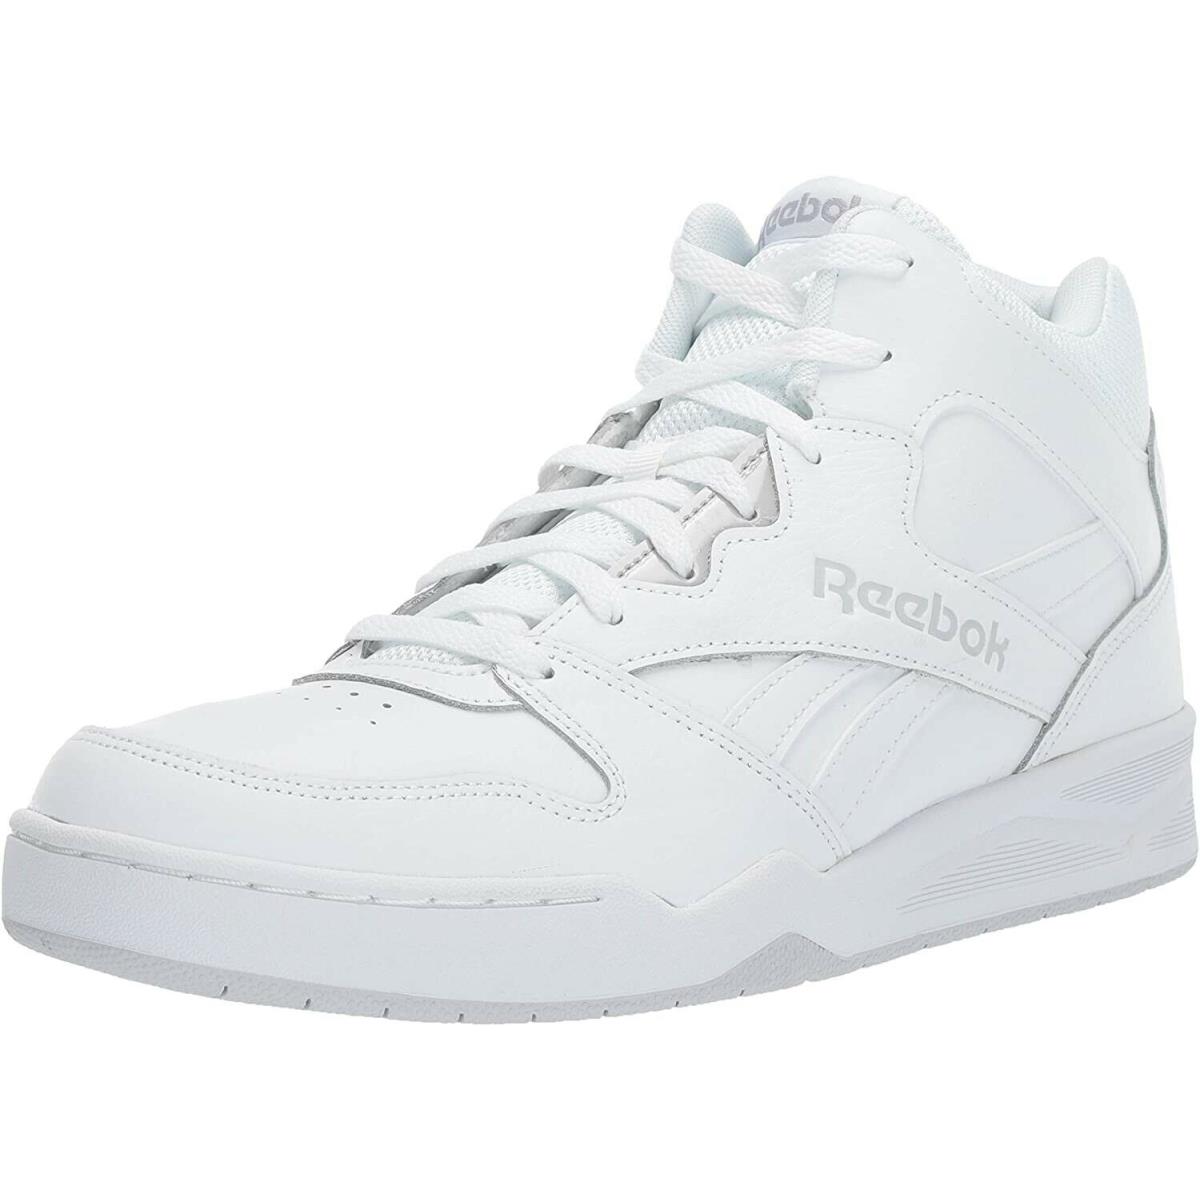 Reebok Men Shoes Royal BB4500 White High Leather Textile White Gray